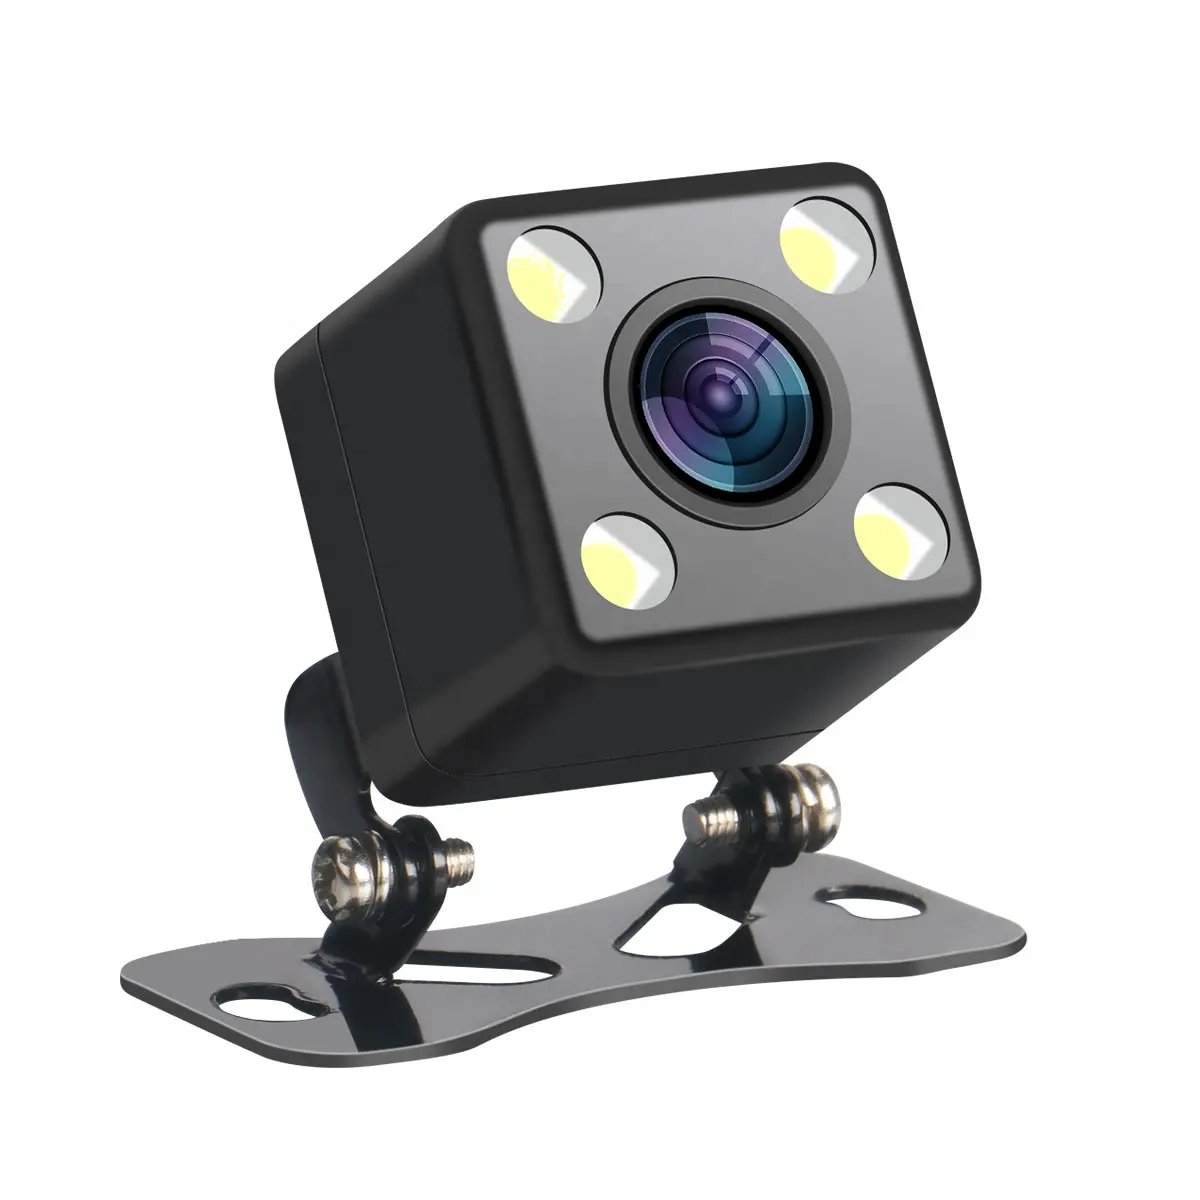 Universal กล้องติดรถยนต์4 Leds,สามารถมองเห็นได้ในที่มืดติดตั้งง่ายกล้องถอยหลังสำหรับกล้องติดรถยนต์